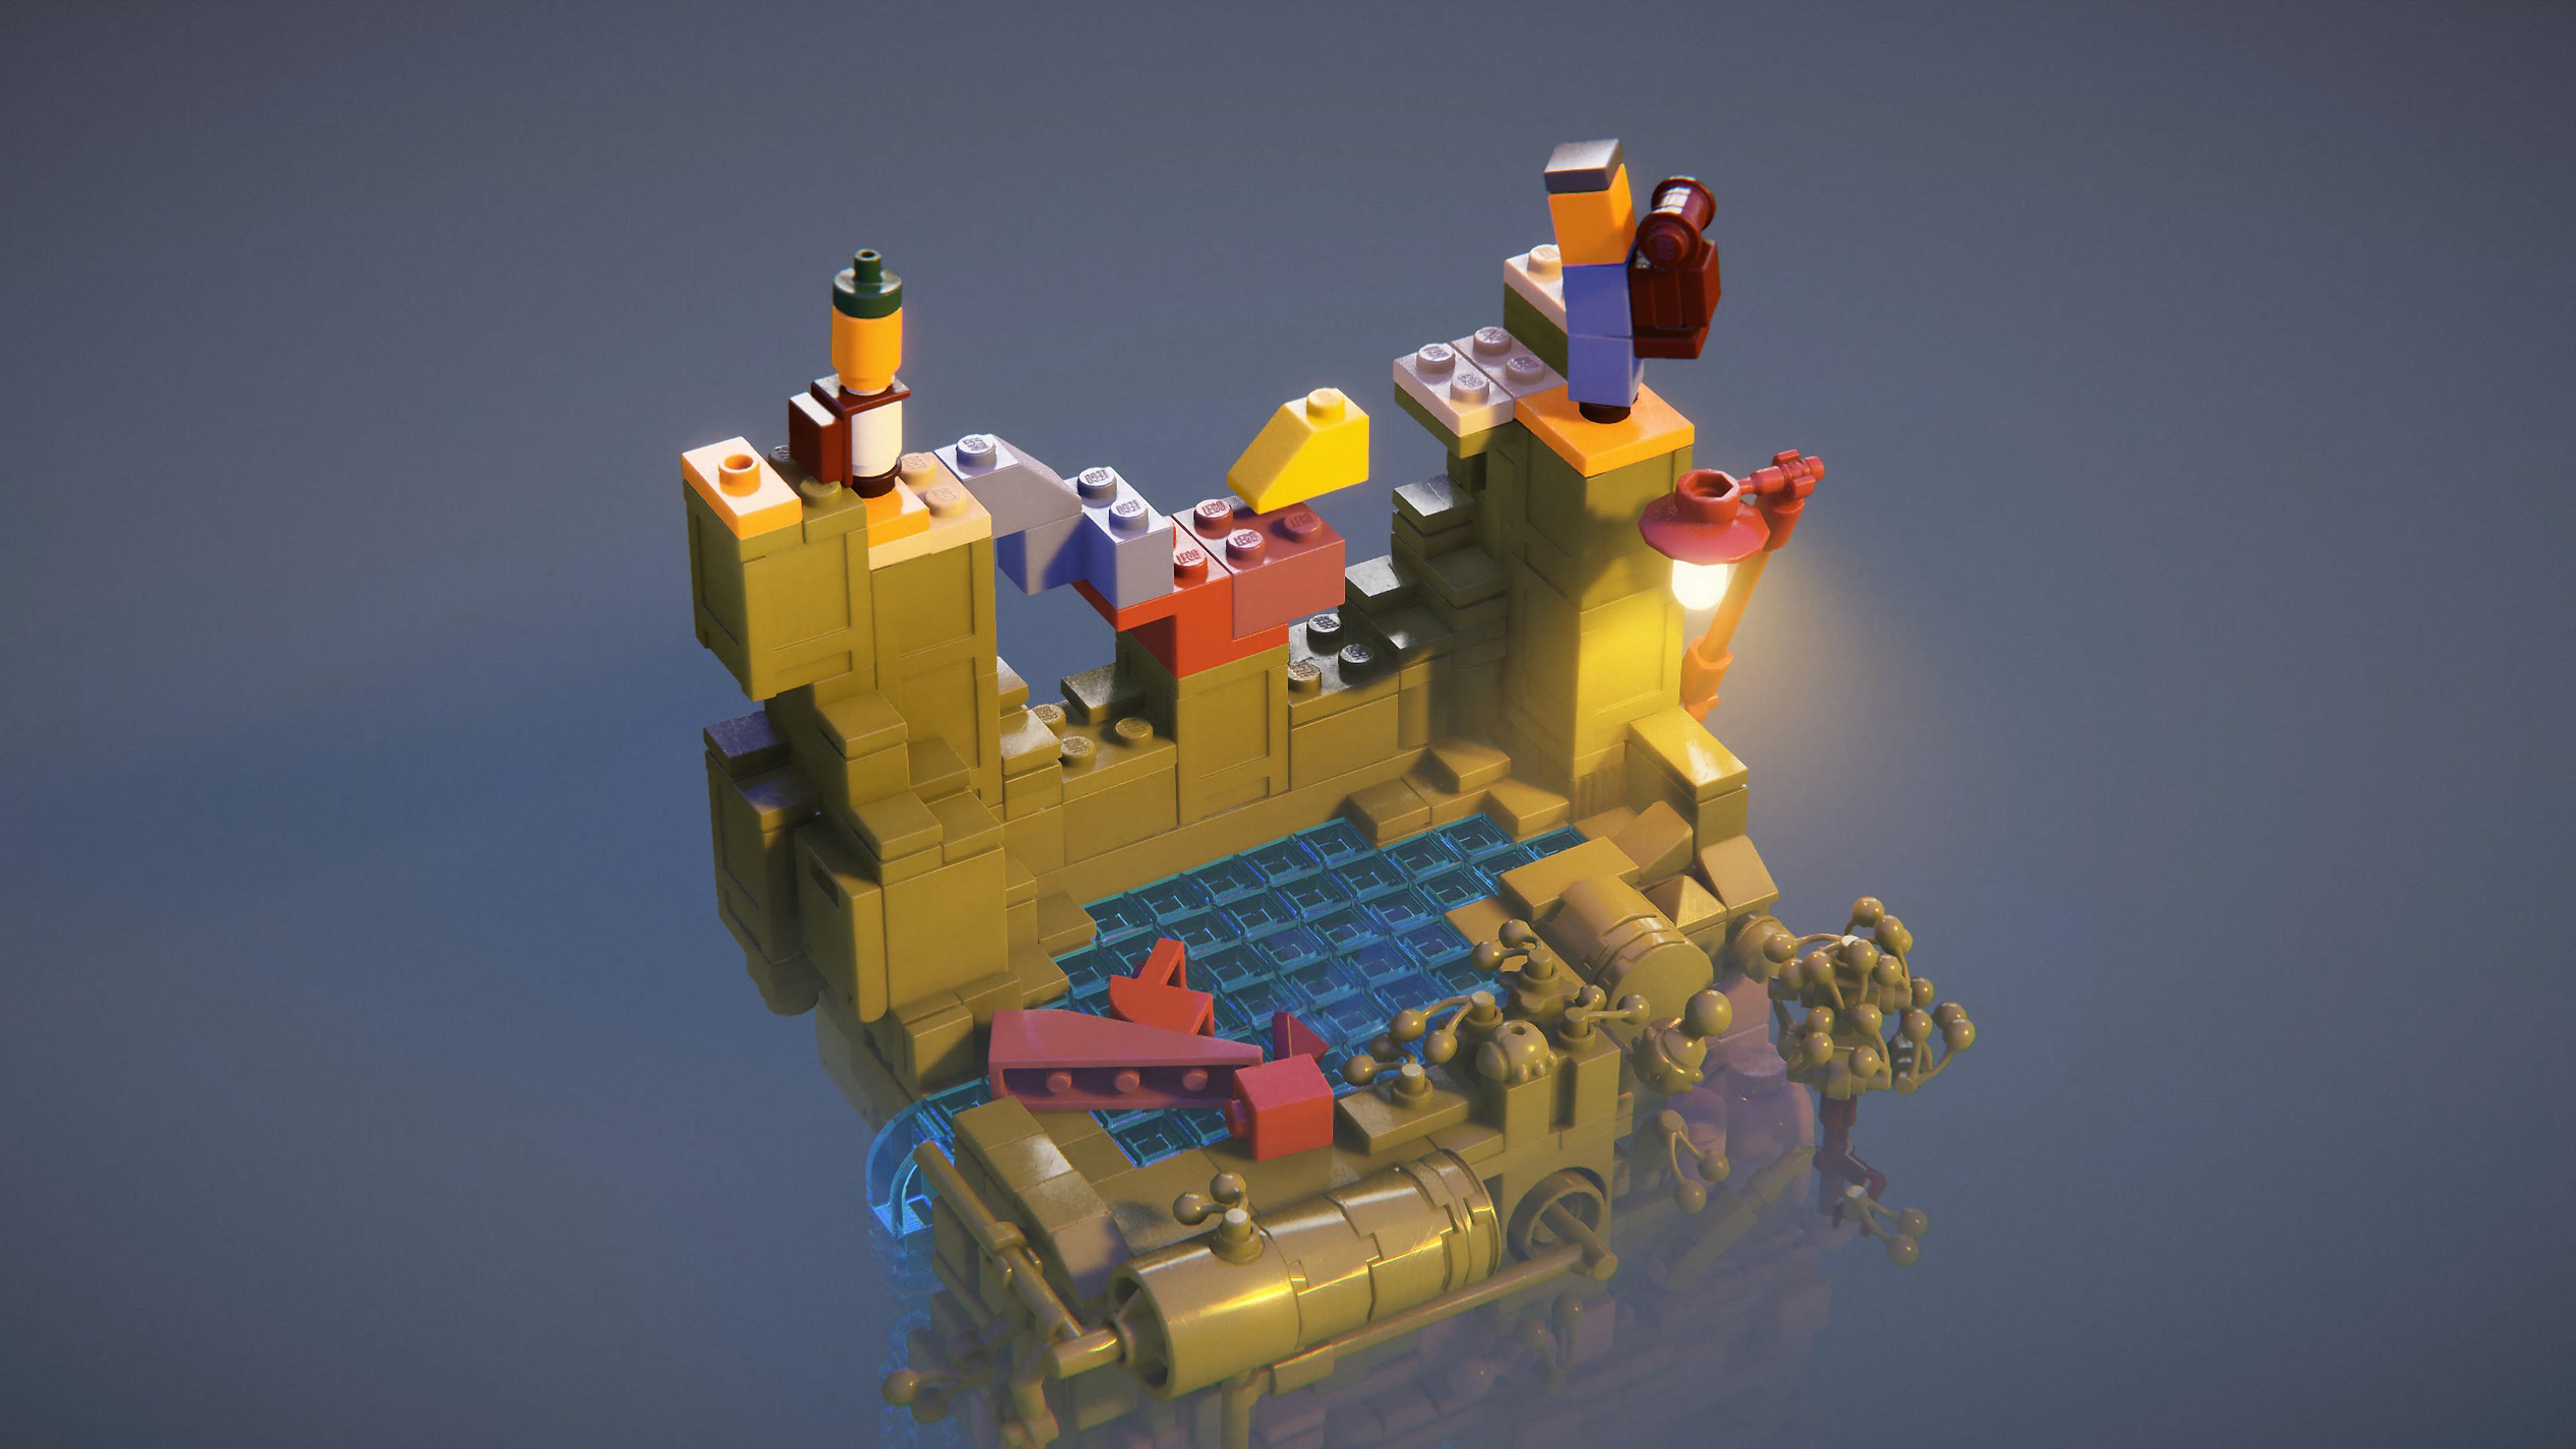 LEGO Builder's Journey - captura de tela mostrando uma cena de LEGO